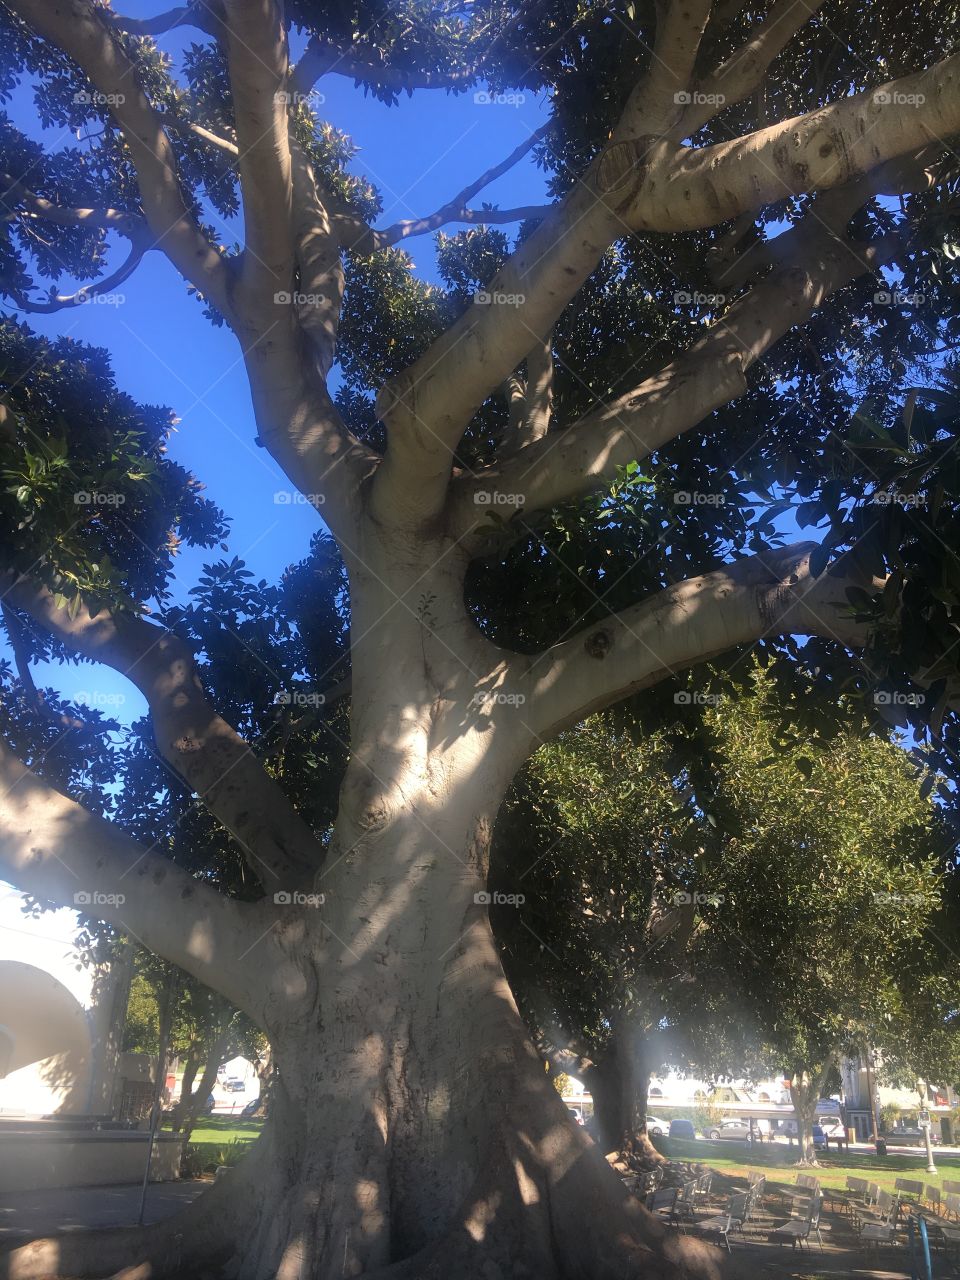 Under a beautiful Banyan tree!